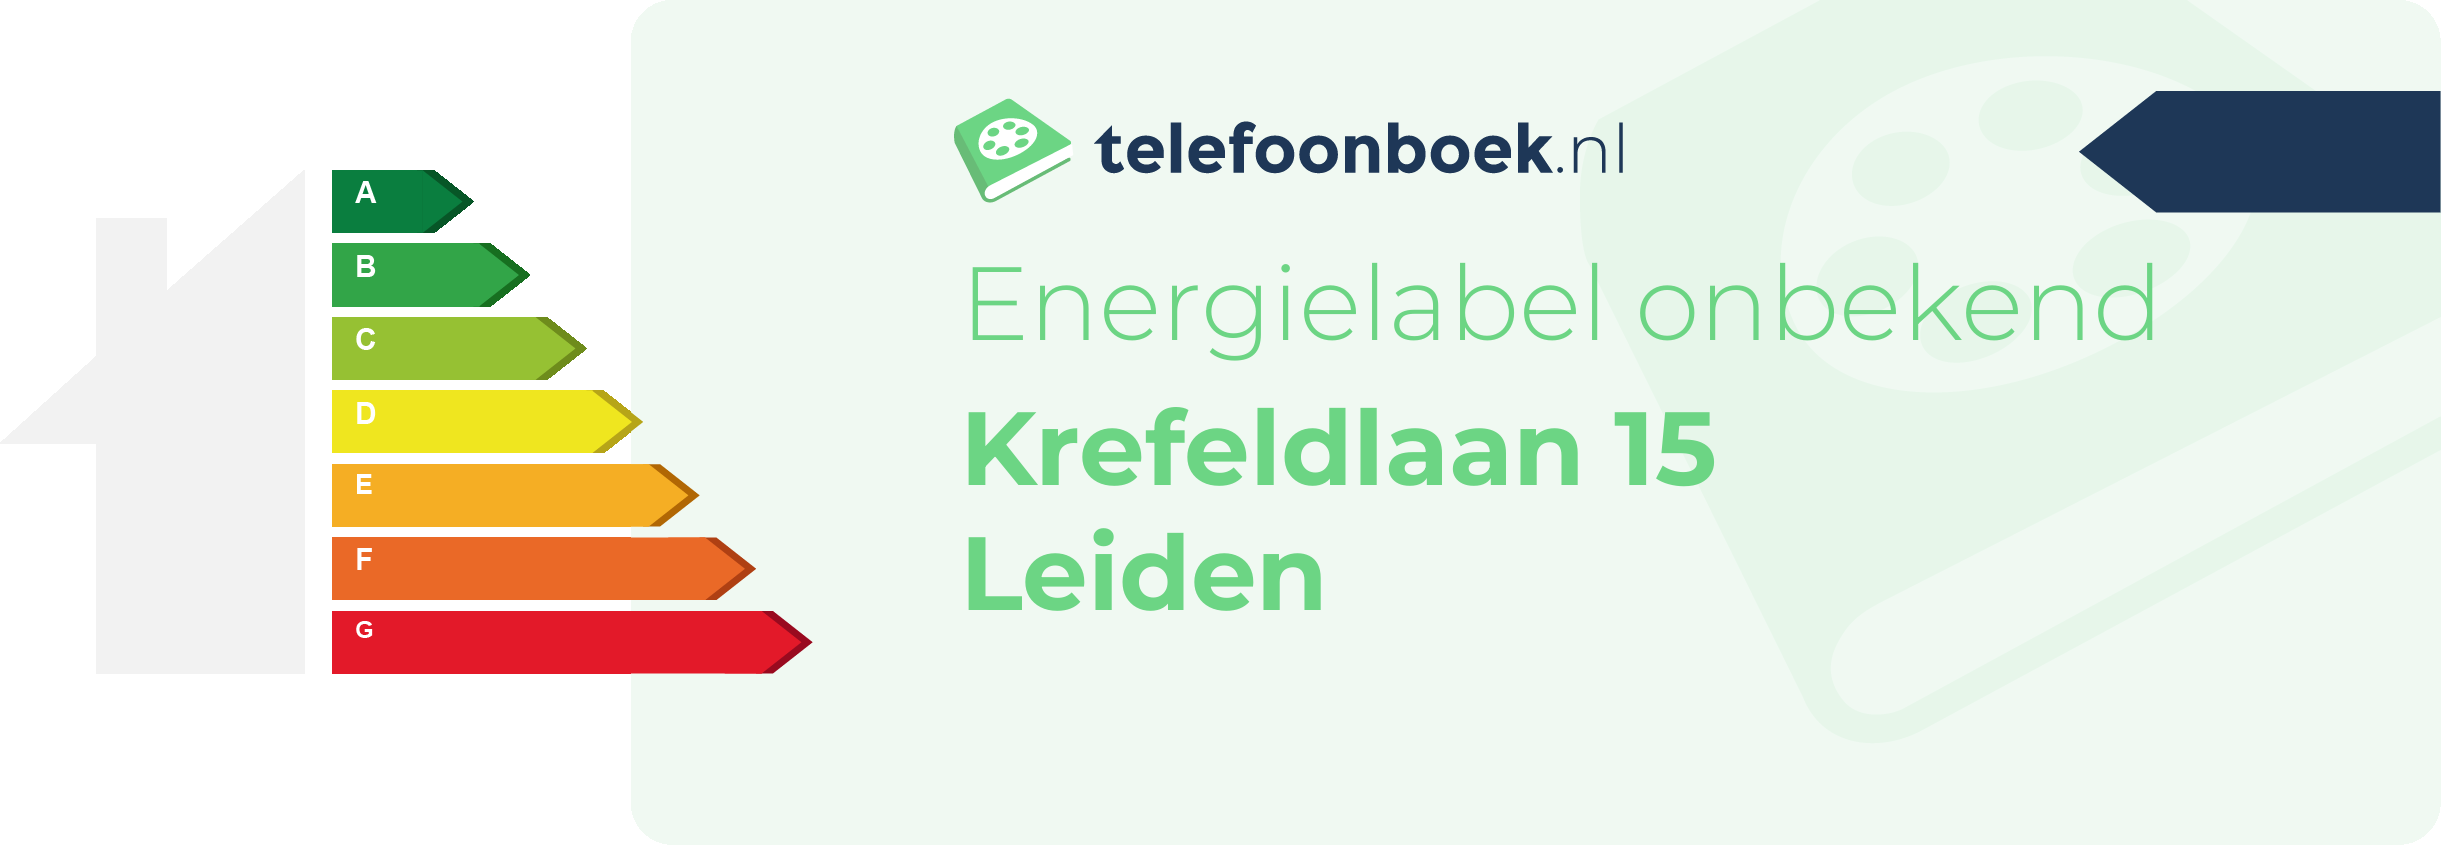 Energielabel Krefeldlaan 15 Leiden